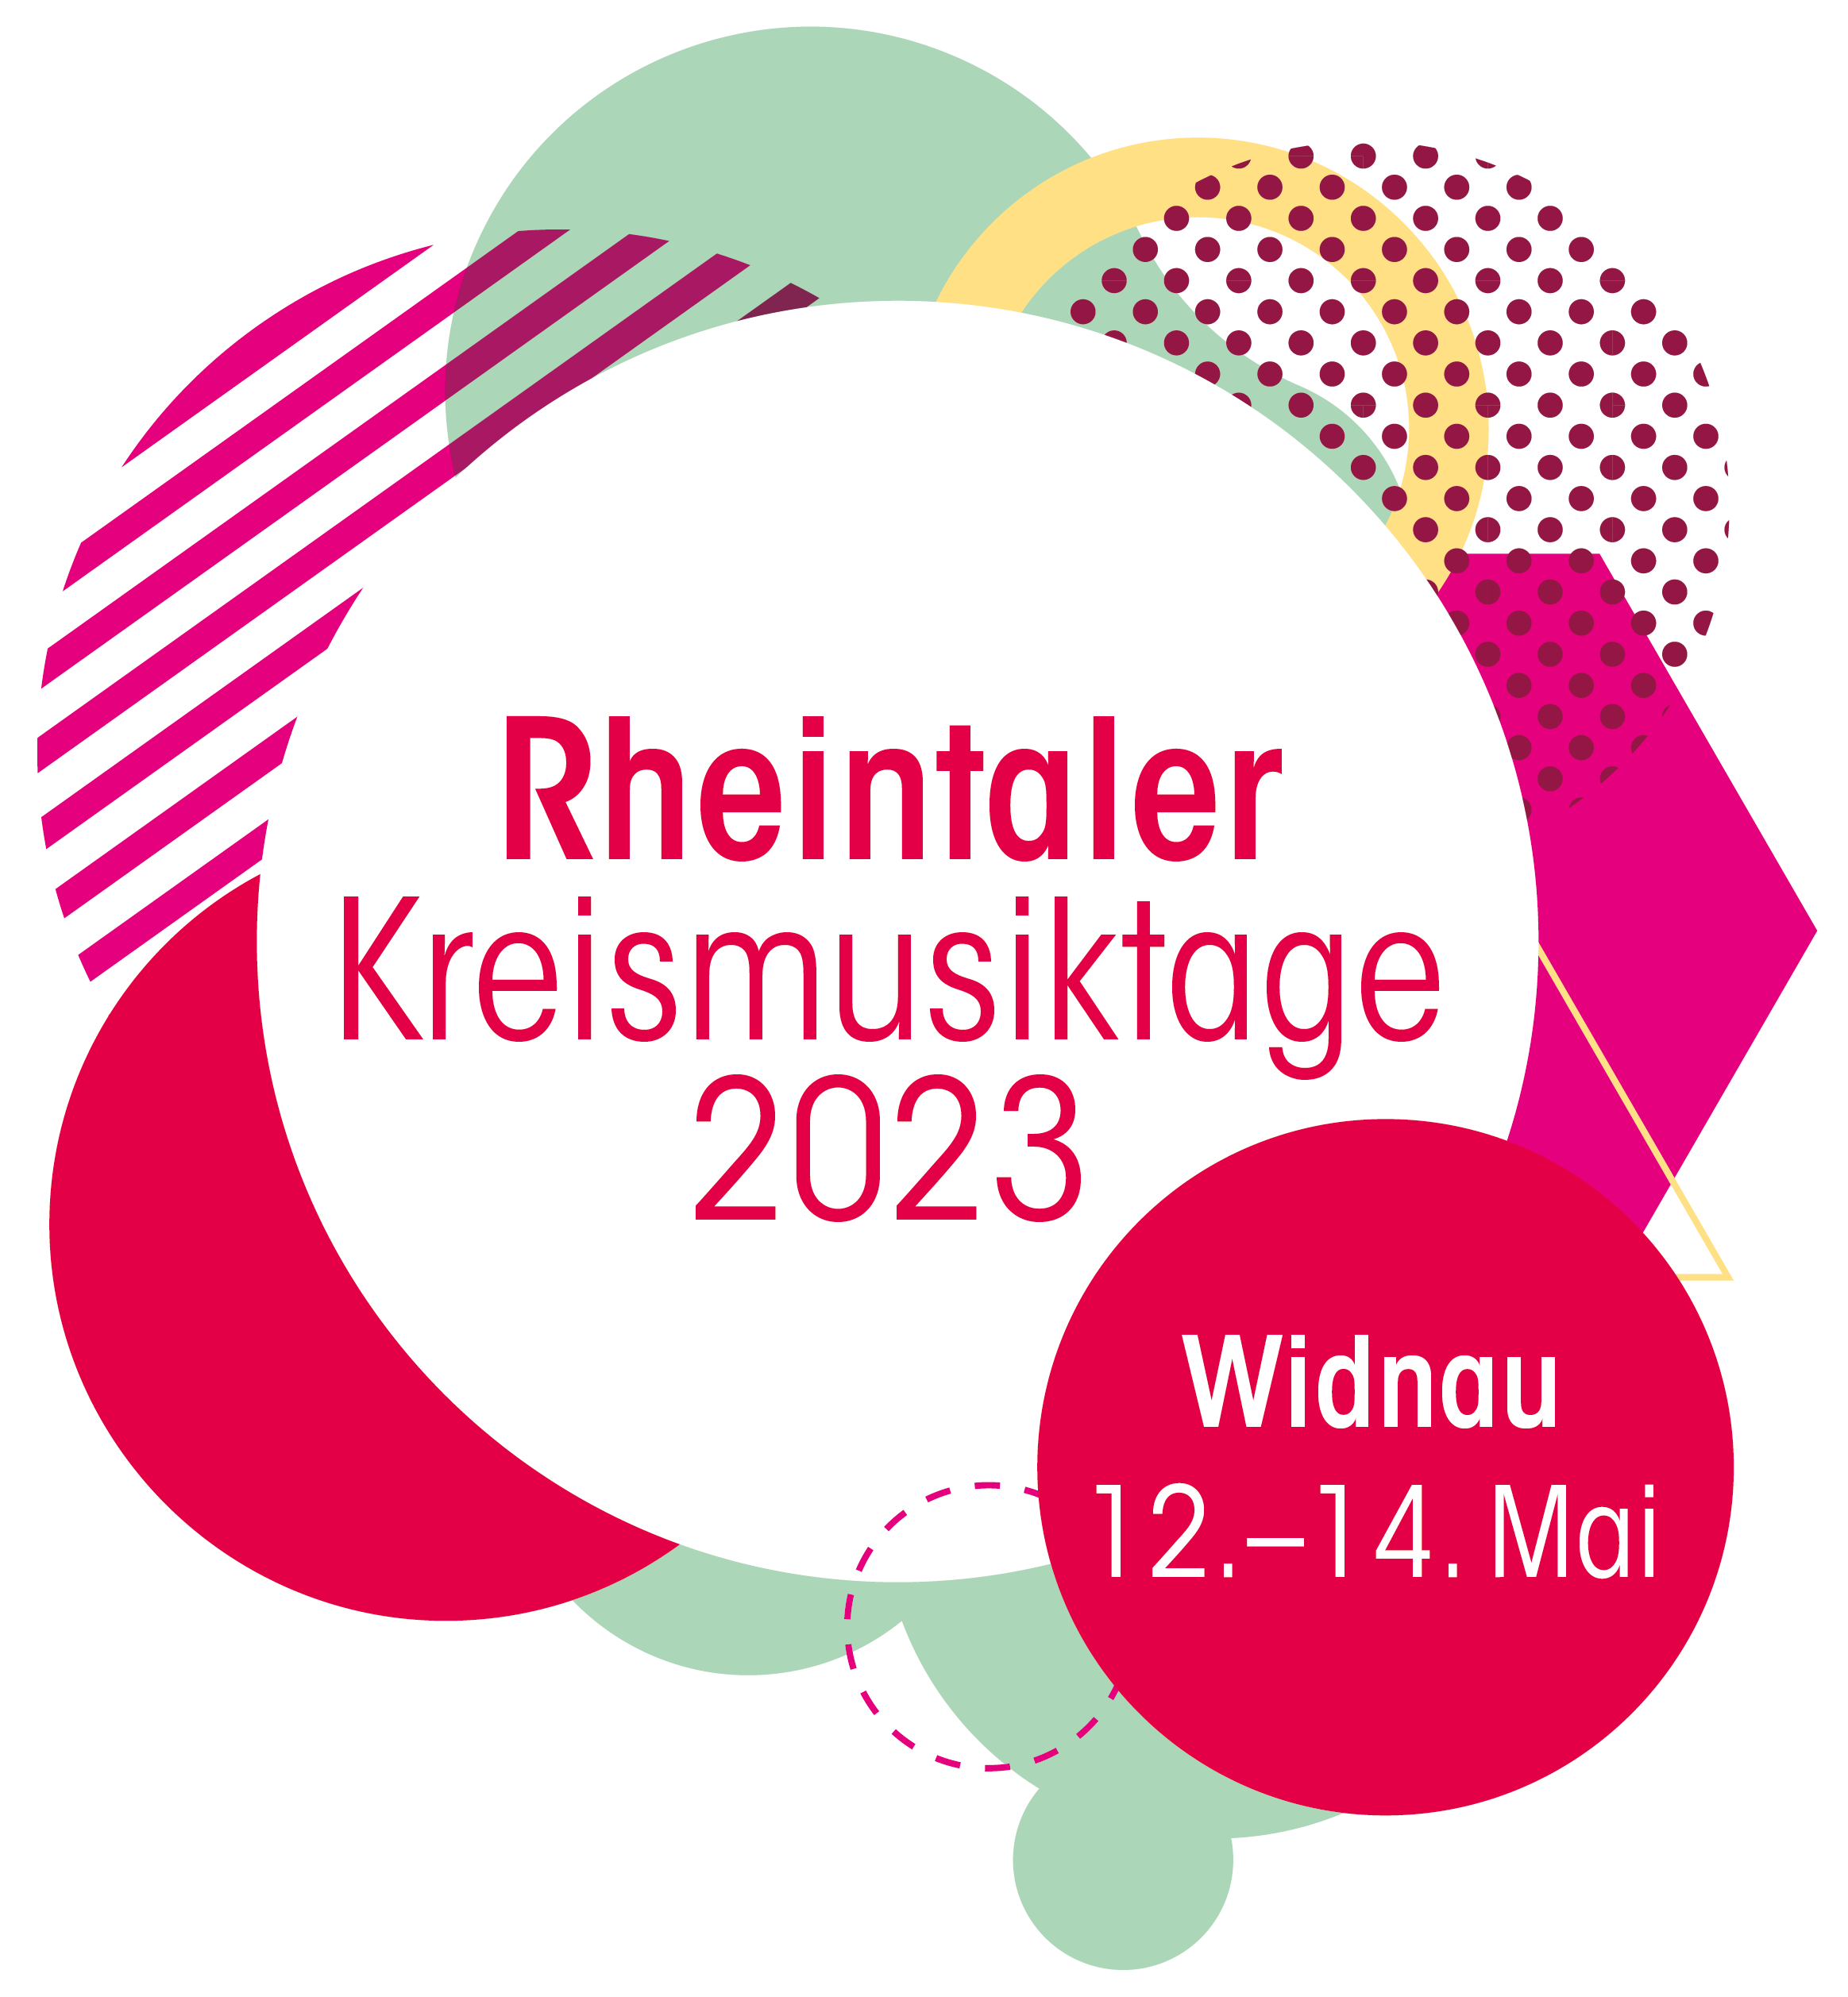 Rheintaler Kreismusiktage 2023 Widnau